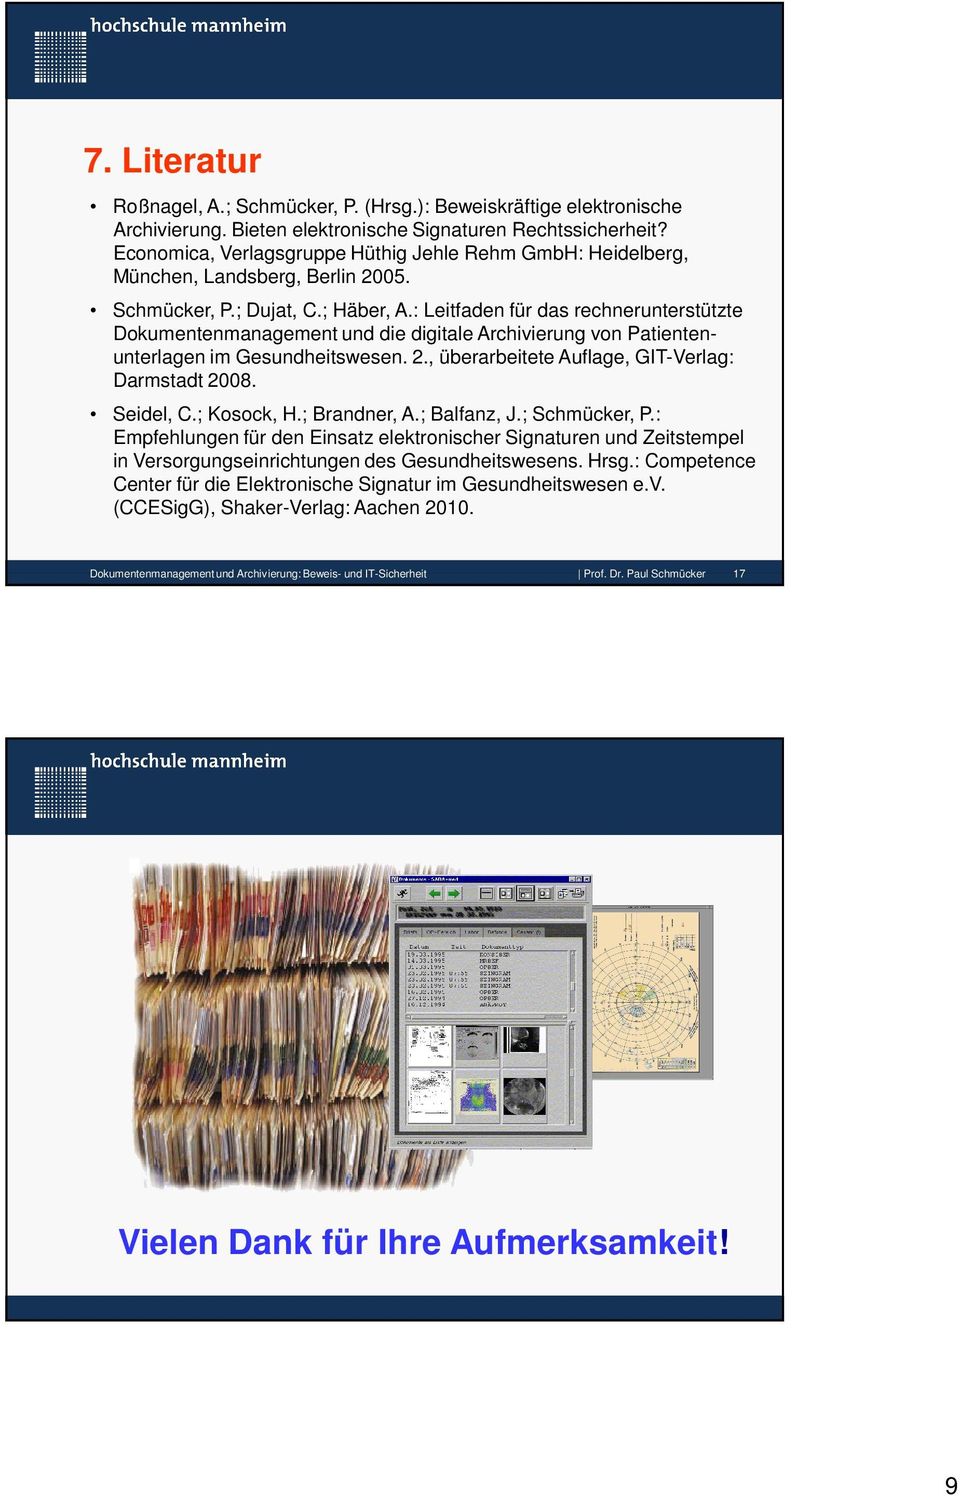 : Leitfaden für das rechnerunterstützte Dokumentenmanagement und die digitale Archivierung von Patientenunterlagen im Gesundheitswesen. 2., überarbeitete Auflage, GIT-Verlag: Darmstadt 2008.